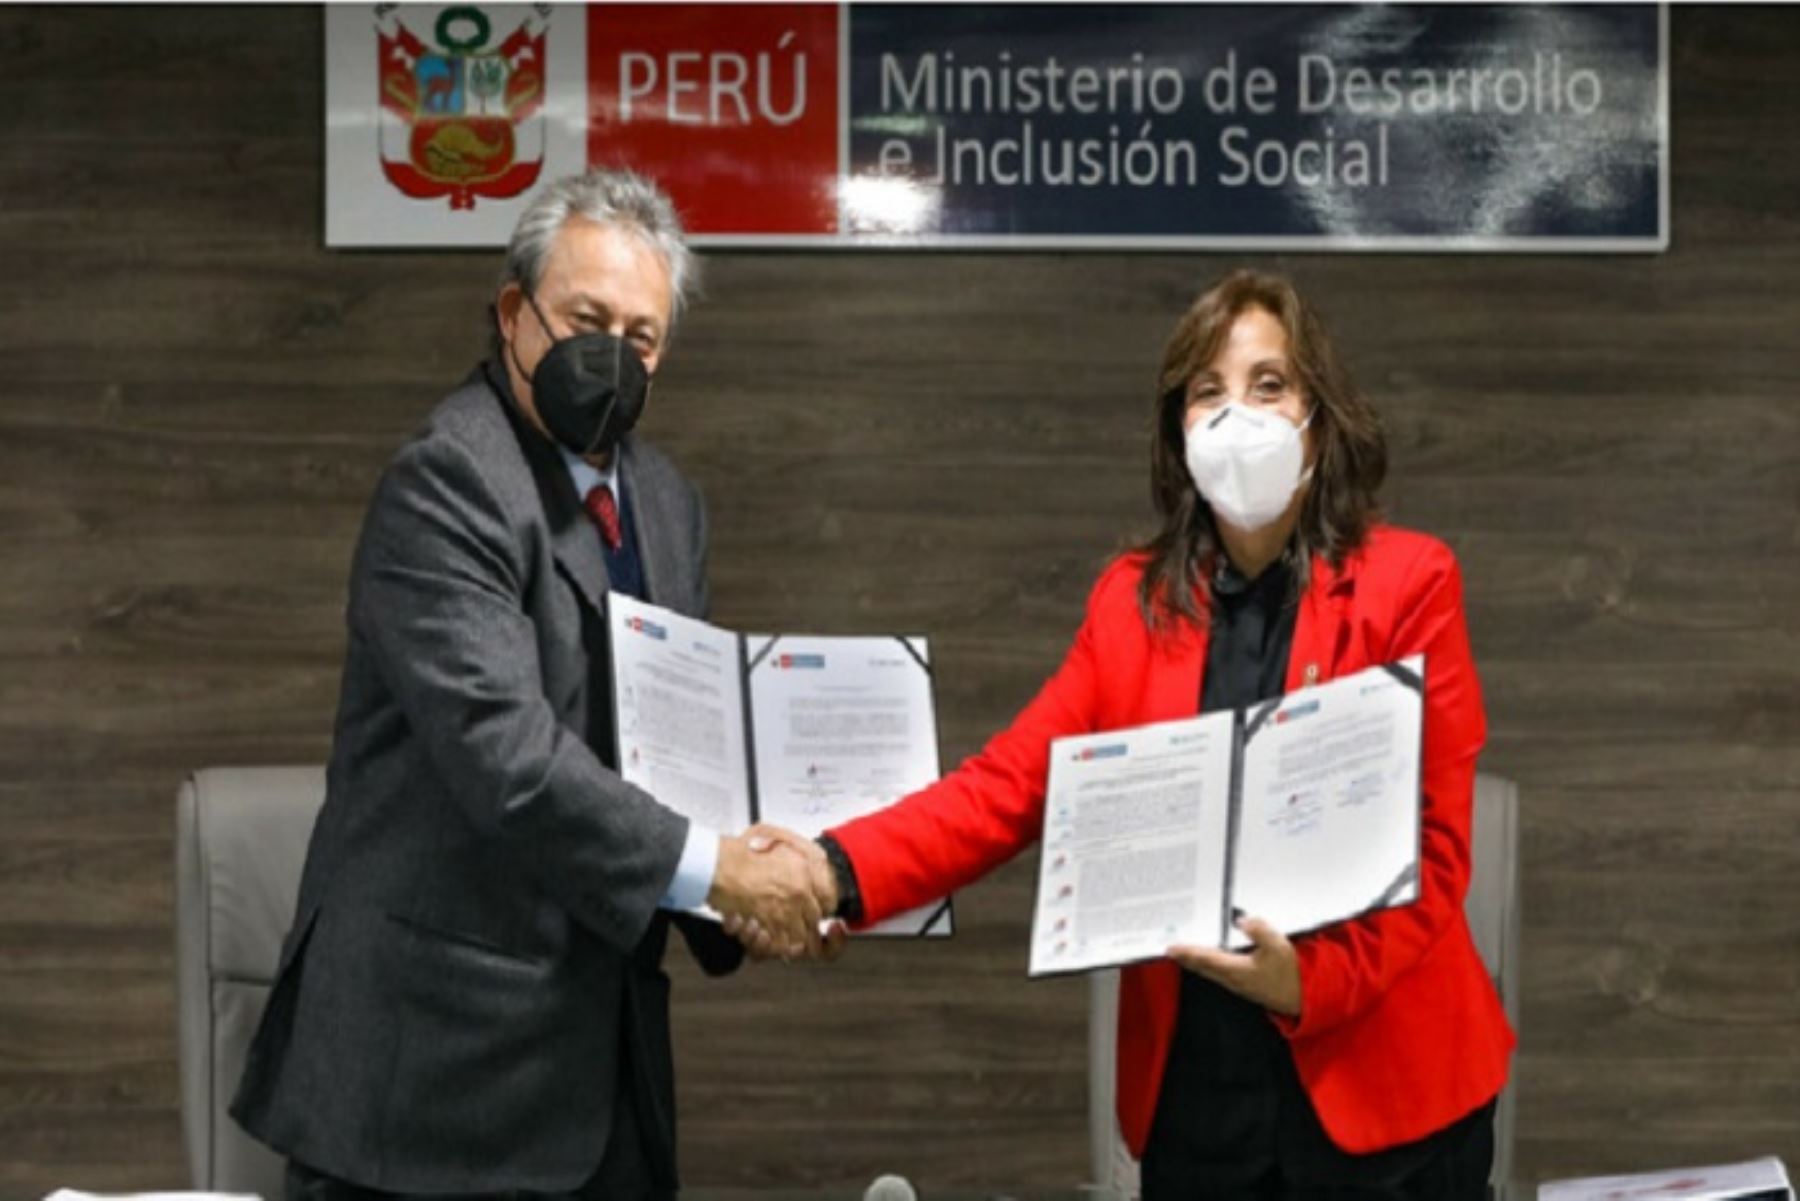 El acuerdo fue firmado por la titular del Midis, Dina Boluarte, y el presidente ejecutivo de Devida, Ricardo Soberón.